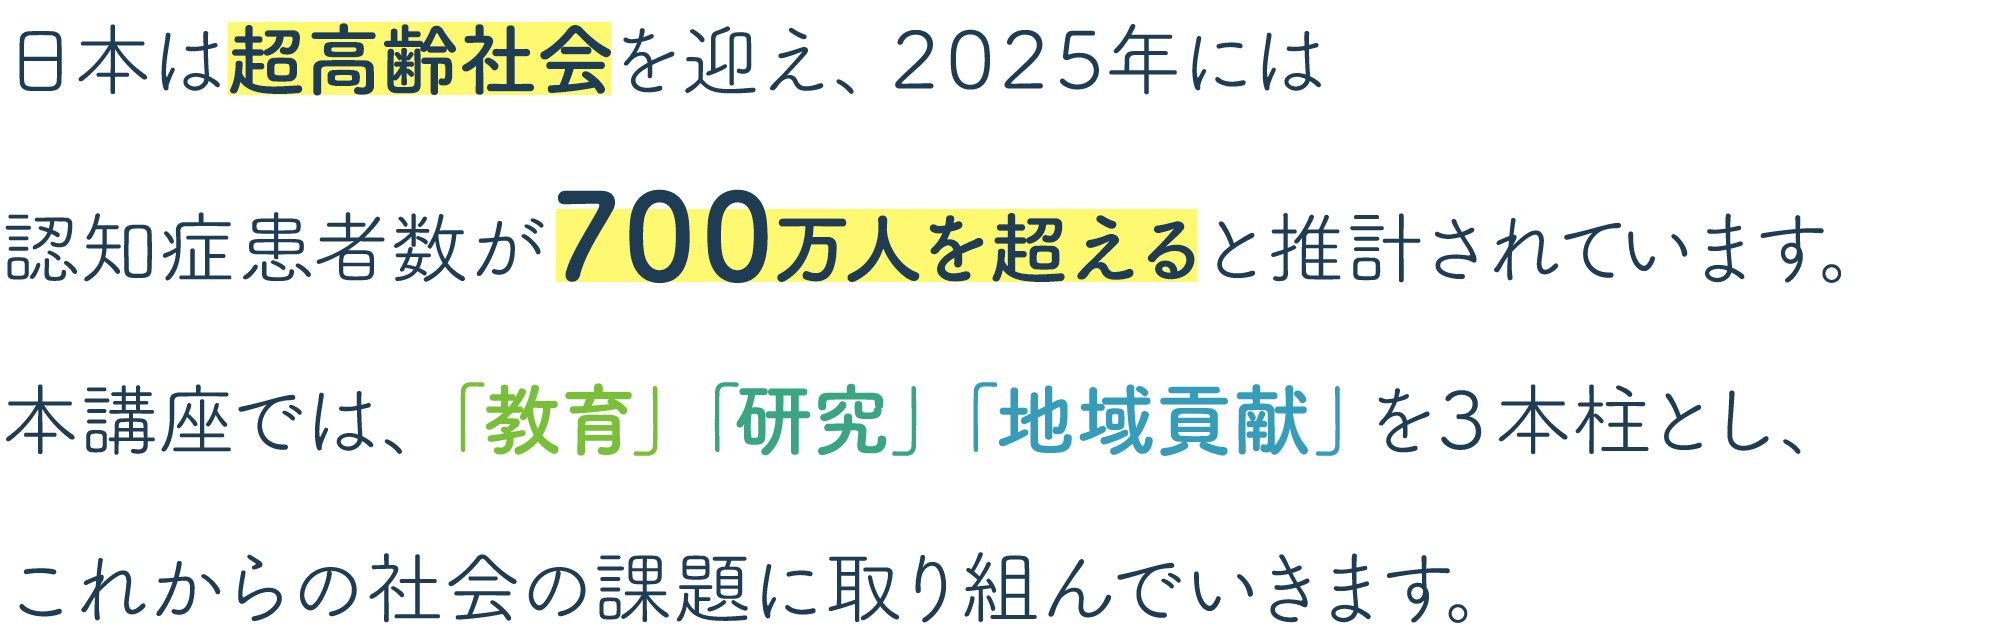 日本は超高齢社会を迎え、2025年には認知症患者数が700万人を超えると推計されています。本講座では、この課題に教育、研究、地域貢献を3本柱に、取り組んでいきます。